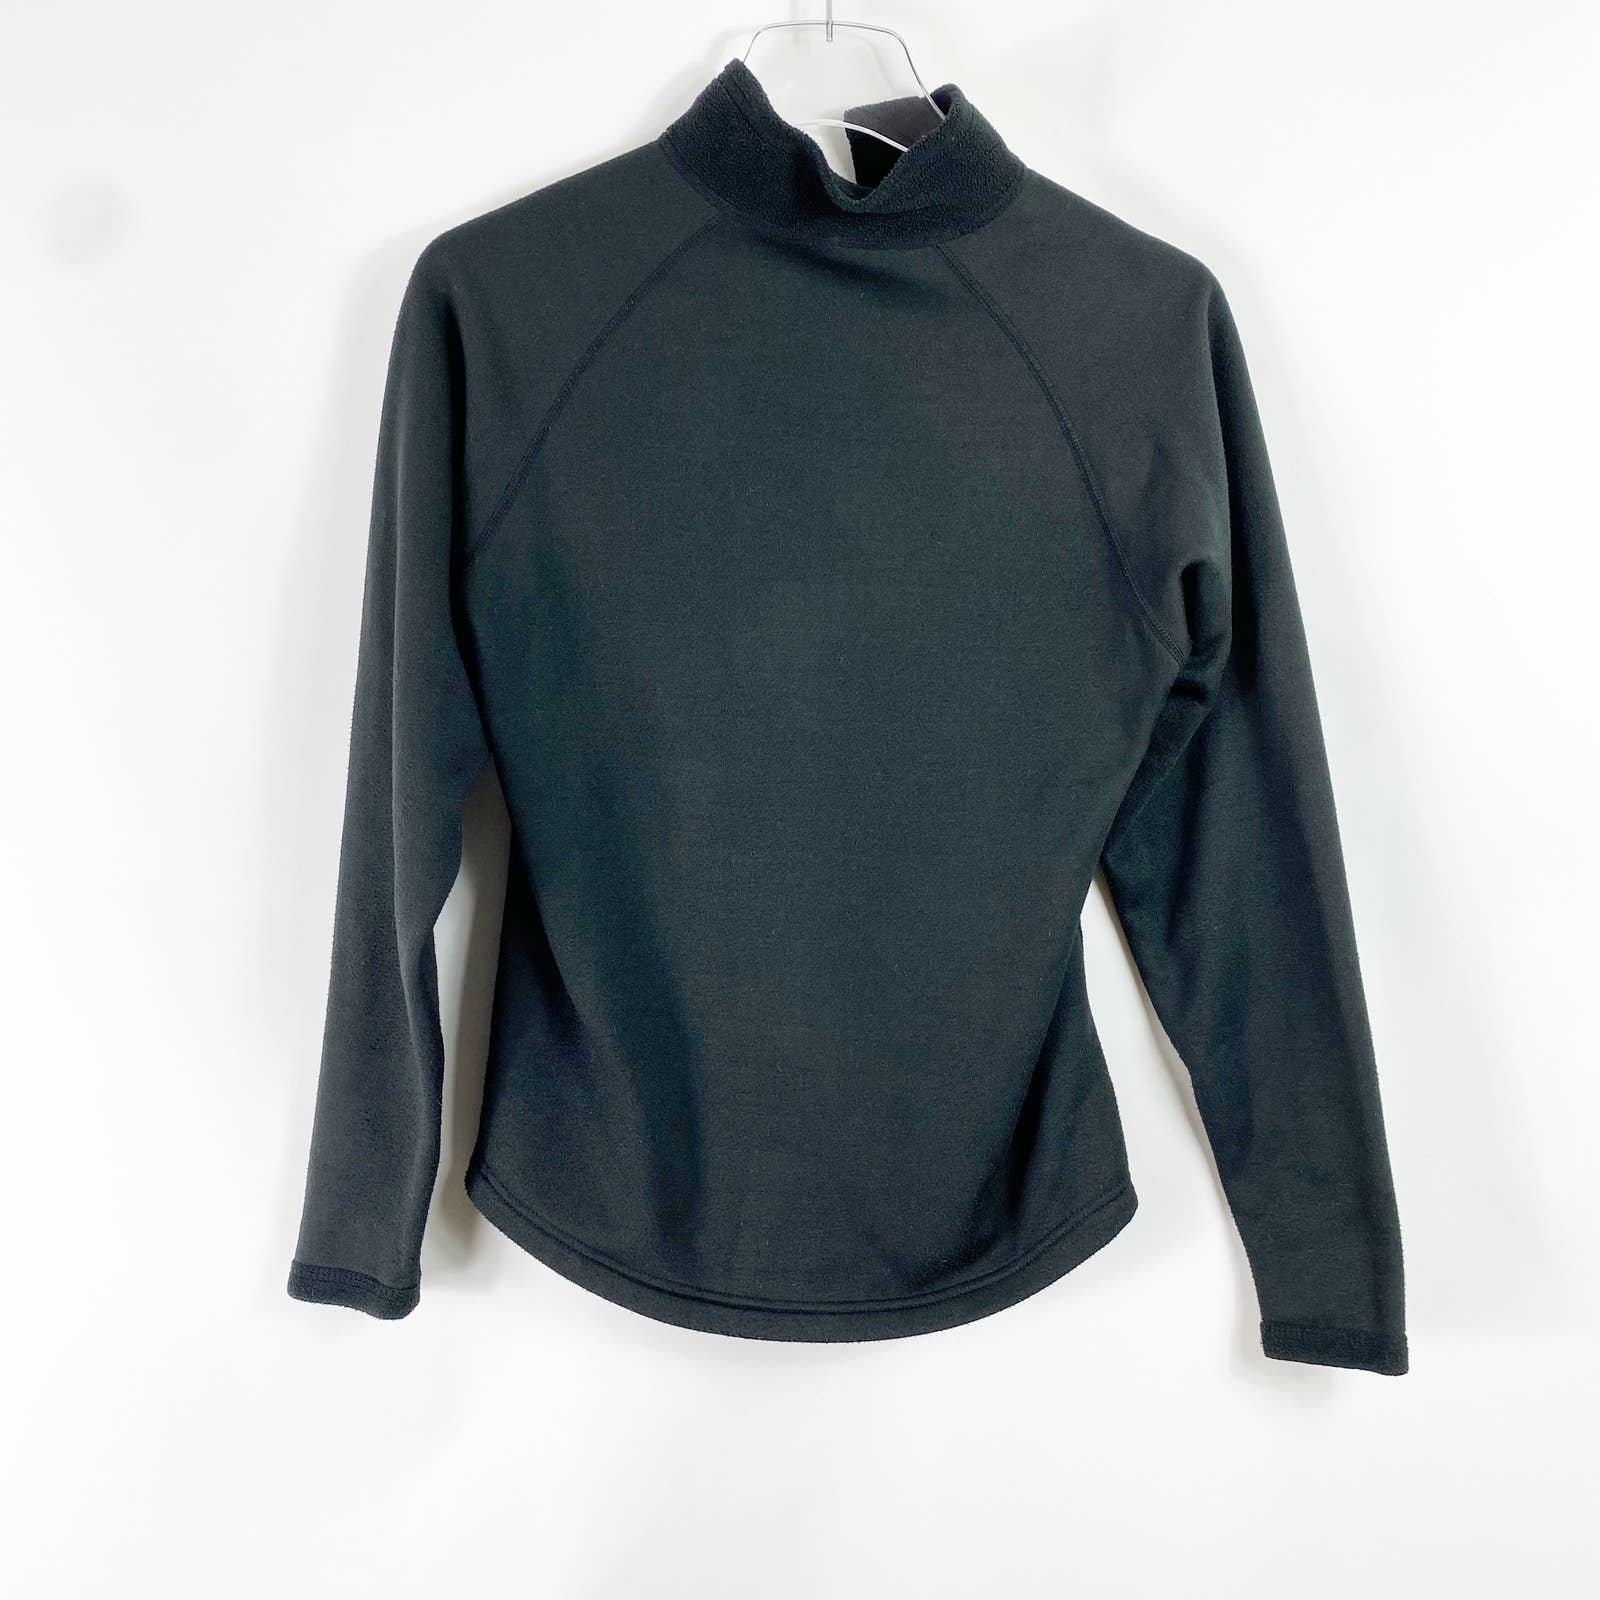 Discounted COLUMBIA Black Fleece Half Zip Jacket owXVttSSL Zero Profit 